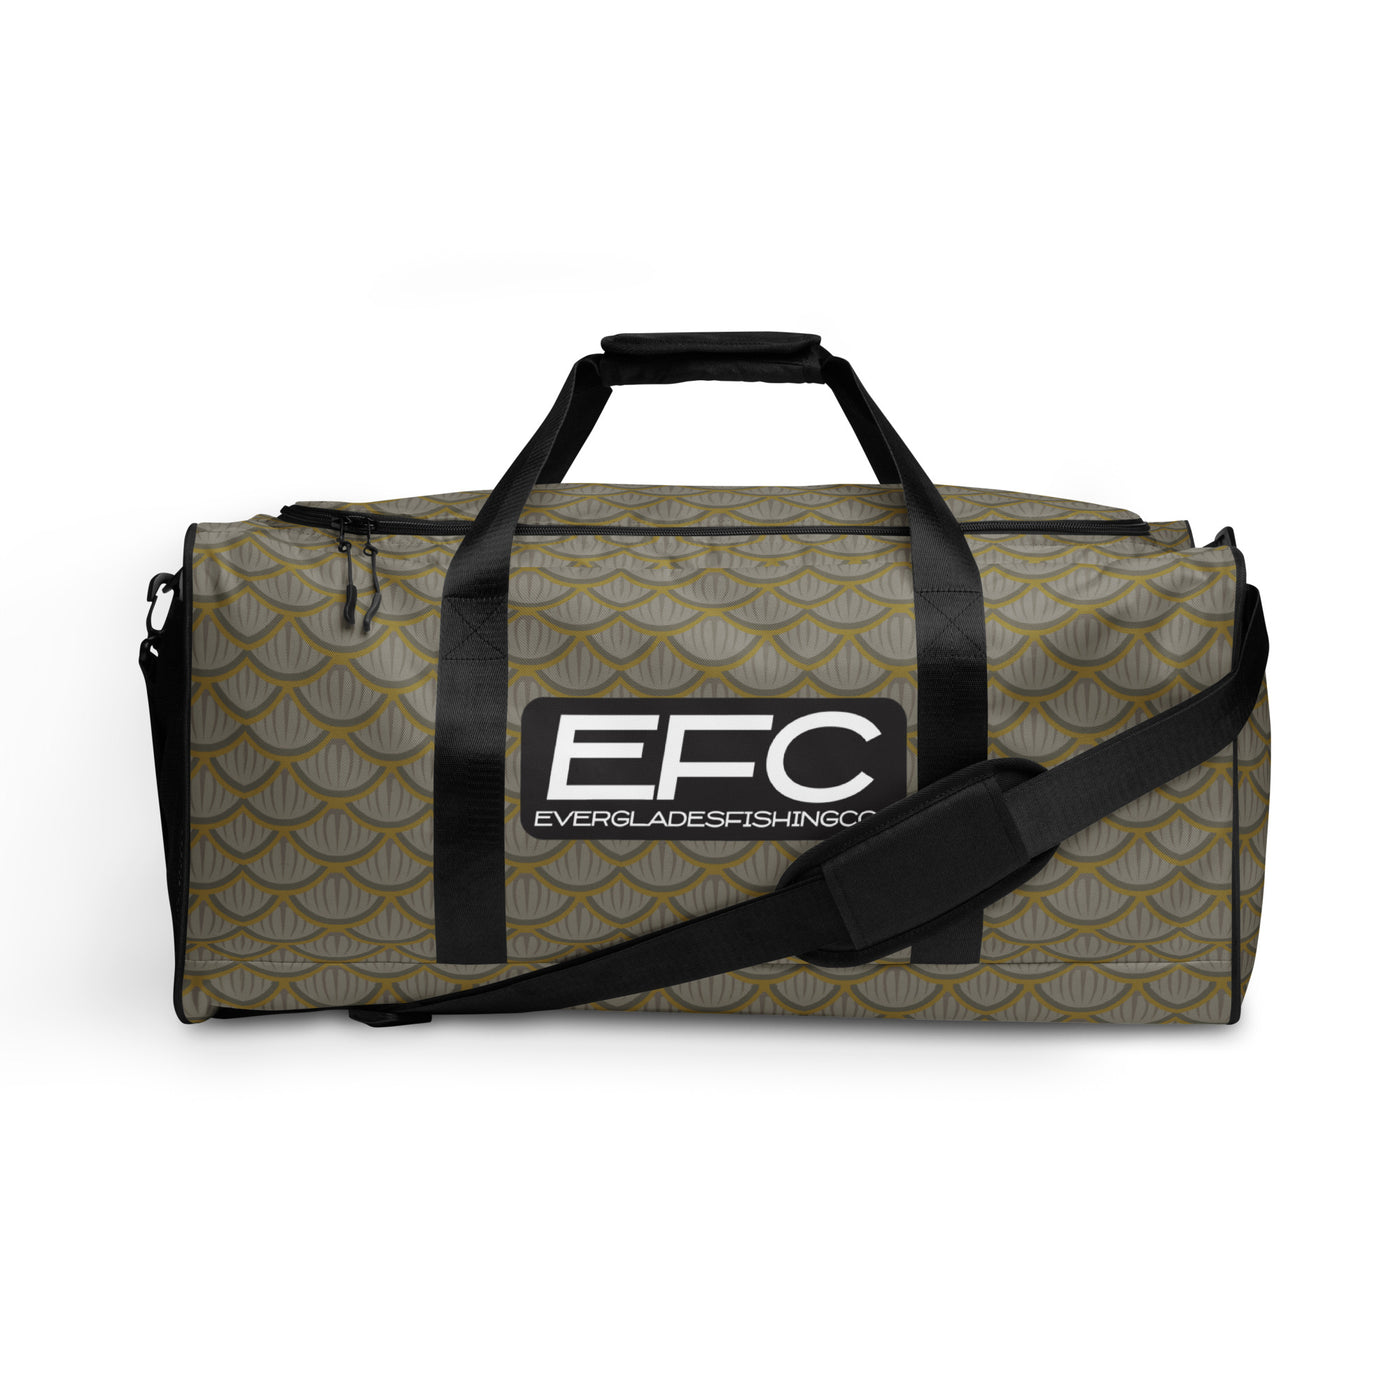 EFC (SNOOK SCALES) REVISED Duffle bag